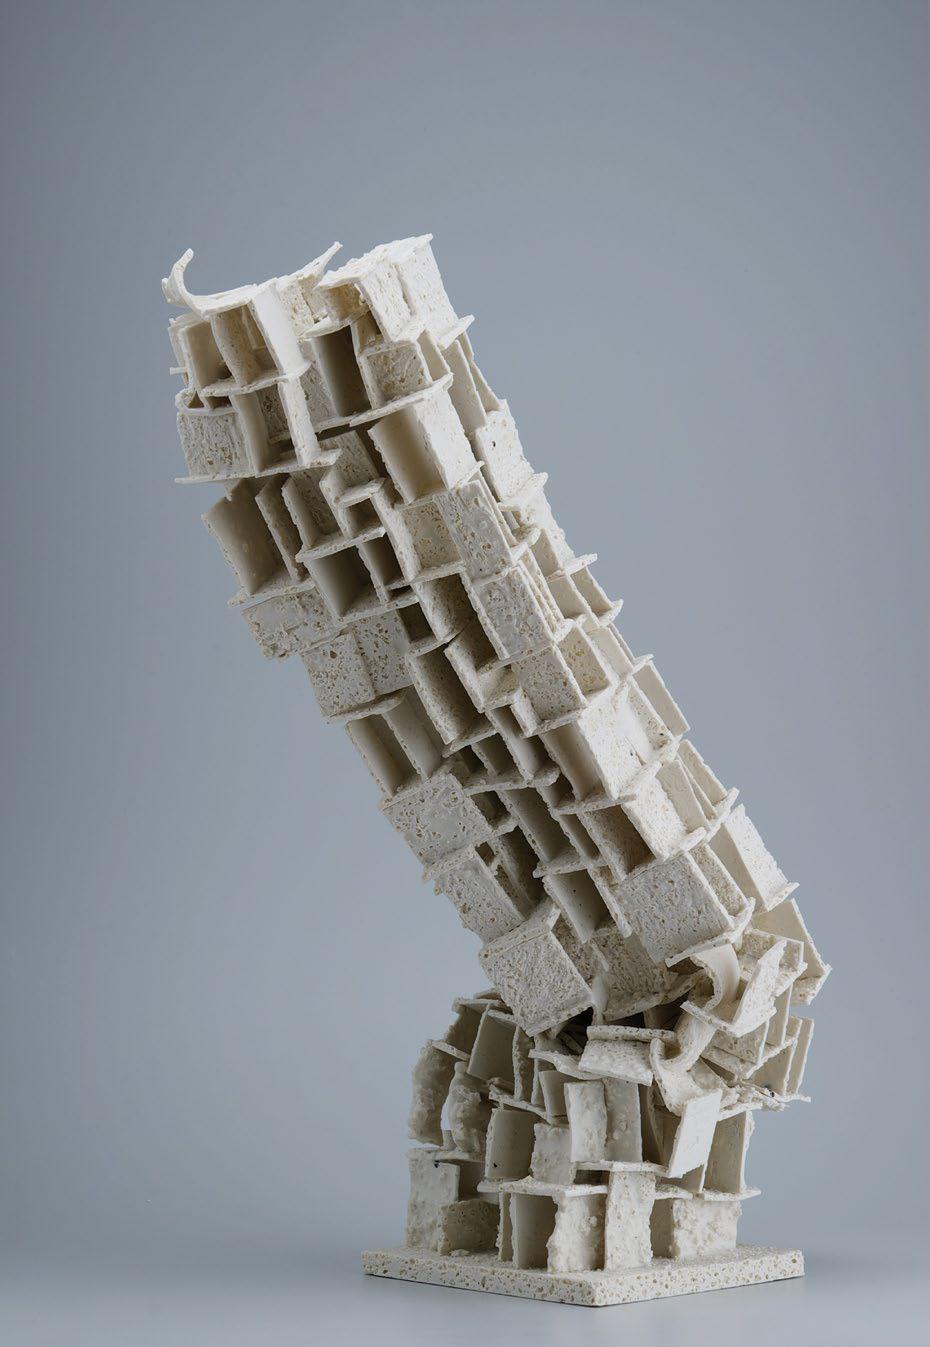 34. babos pálma rom 2, 2012 módosított, visszahasznosított porcelán felhasználásával egyedi kézi technikával felépített szobor, 17 x 15 x 55 cm kikiáltási ár: 680 000 Ft becsérték: 750 000 Ft "Amikor